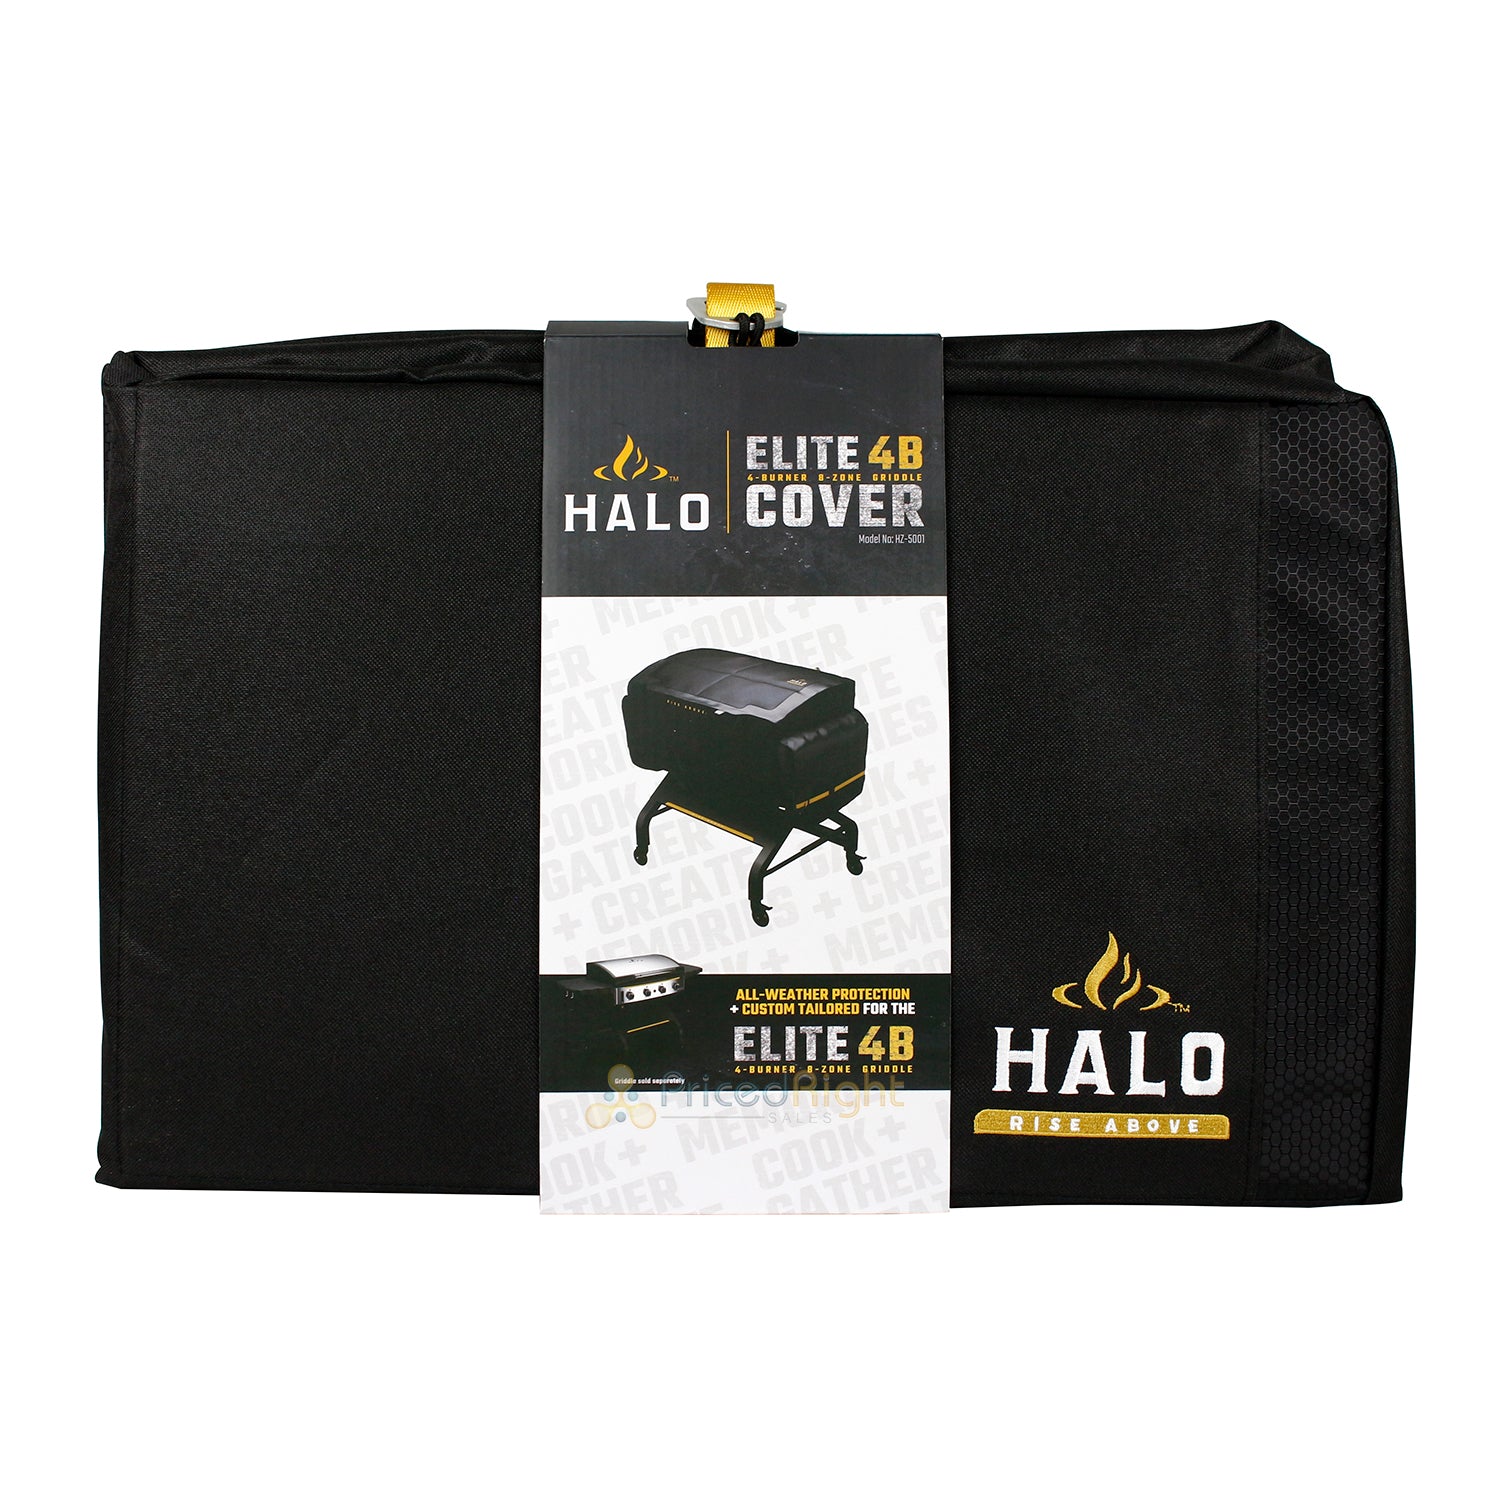 Halo Elite 4-Burner Griddle Cover 600D Polyester Custom-Tailored Wind-Proof